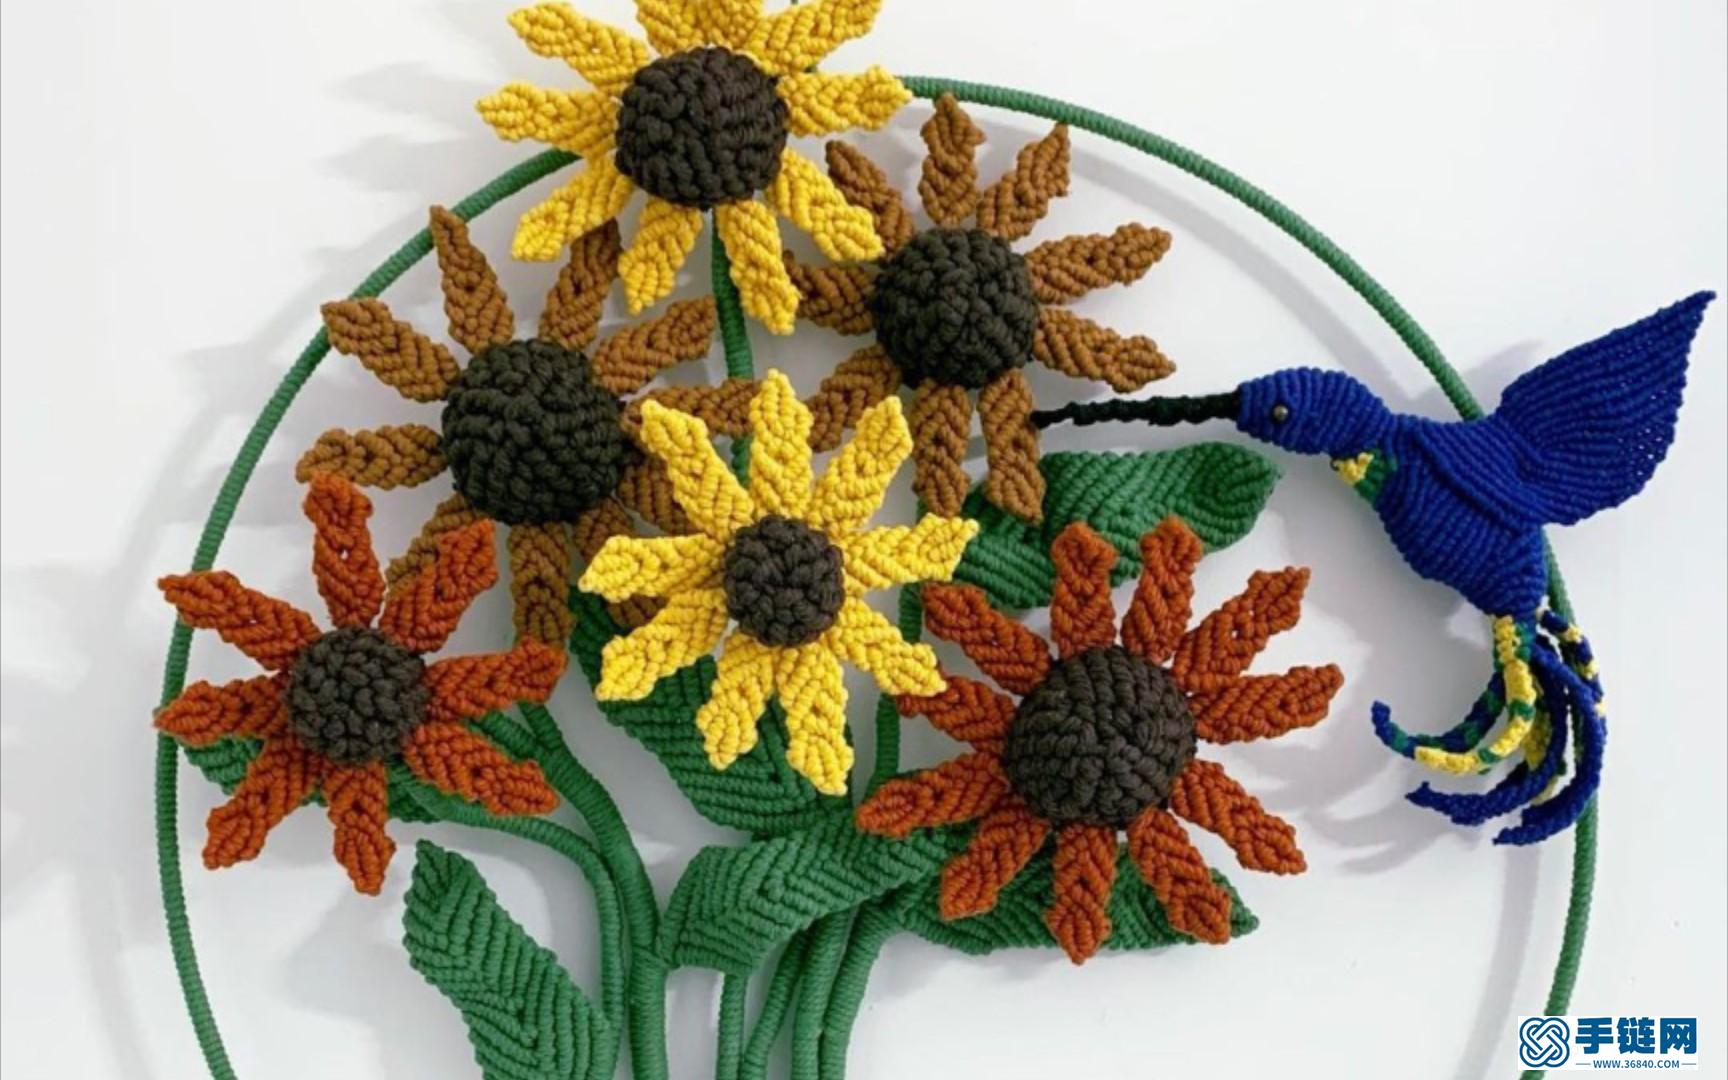 美图欣赏 | Macrame编织花朵与蜂鸟壁挂装饰